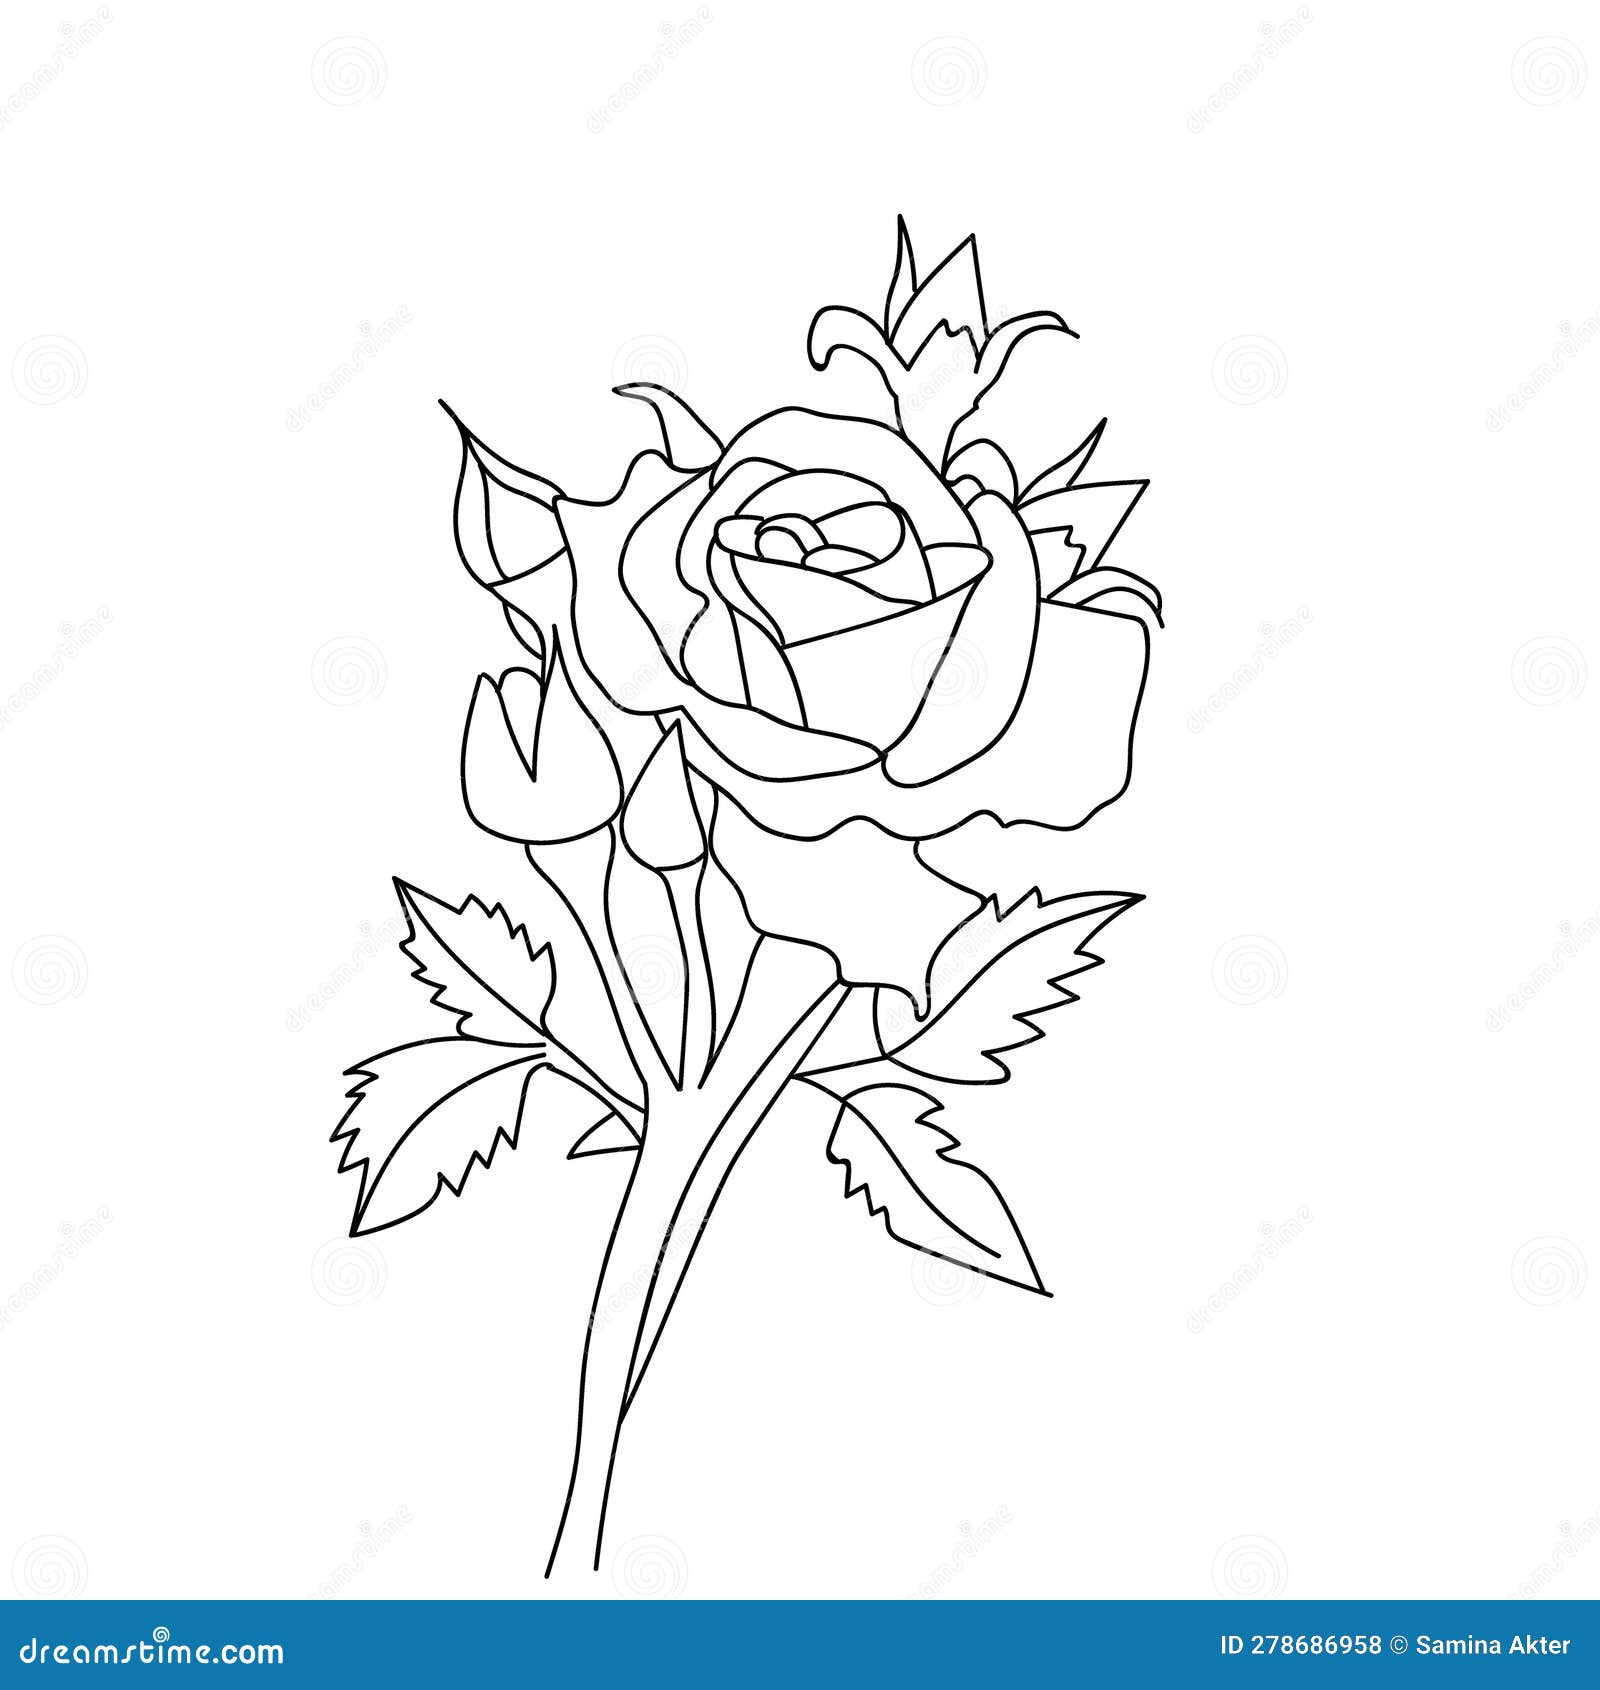 Rose Stick and Leaf of Bud Illustration, Rose Vector Art, Easy Rose ...